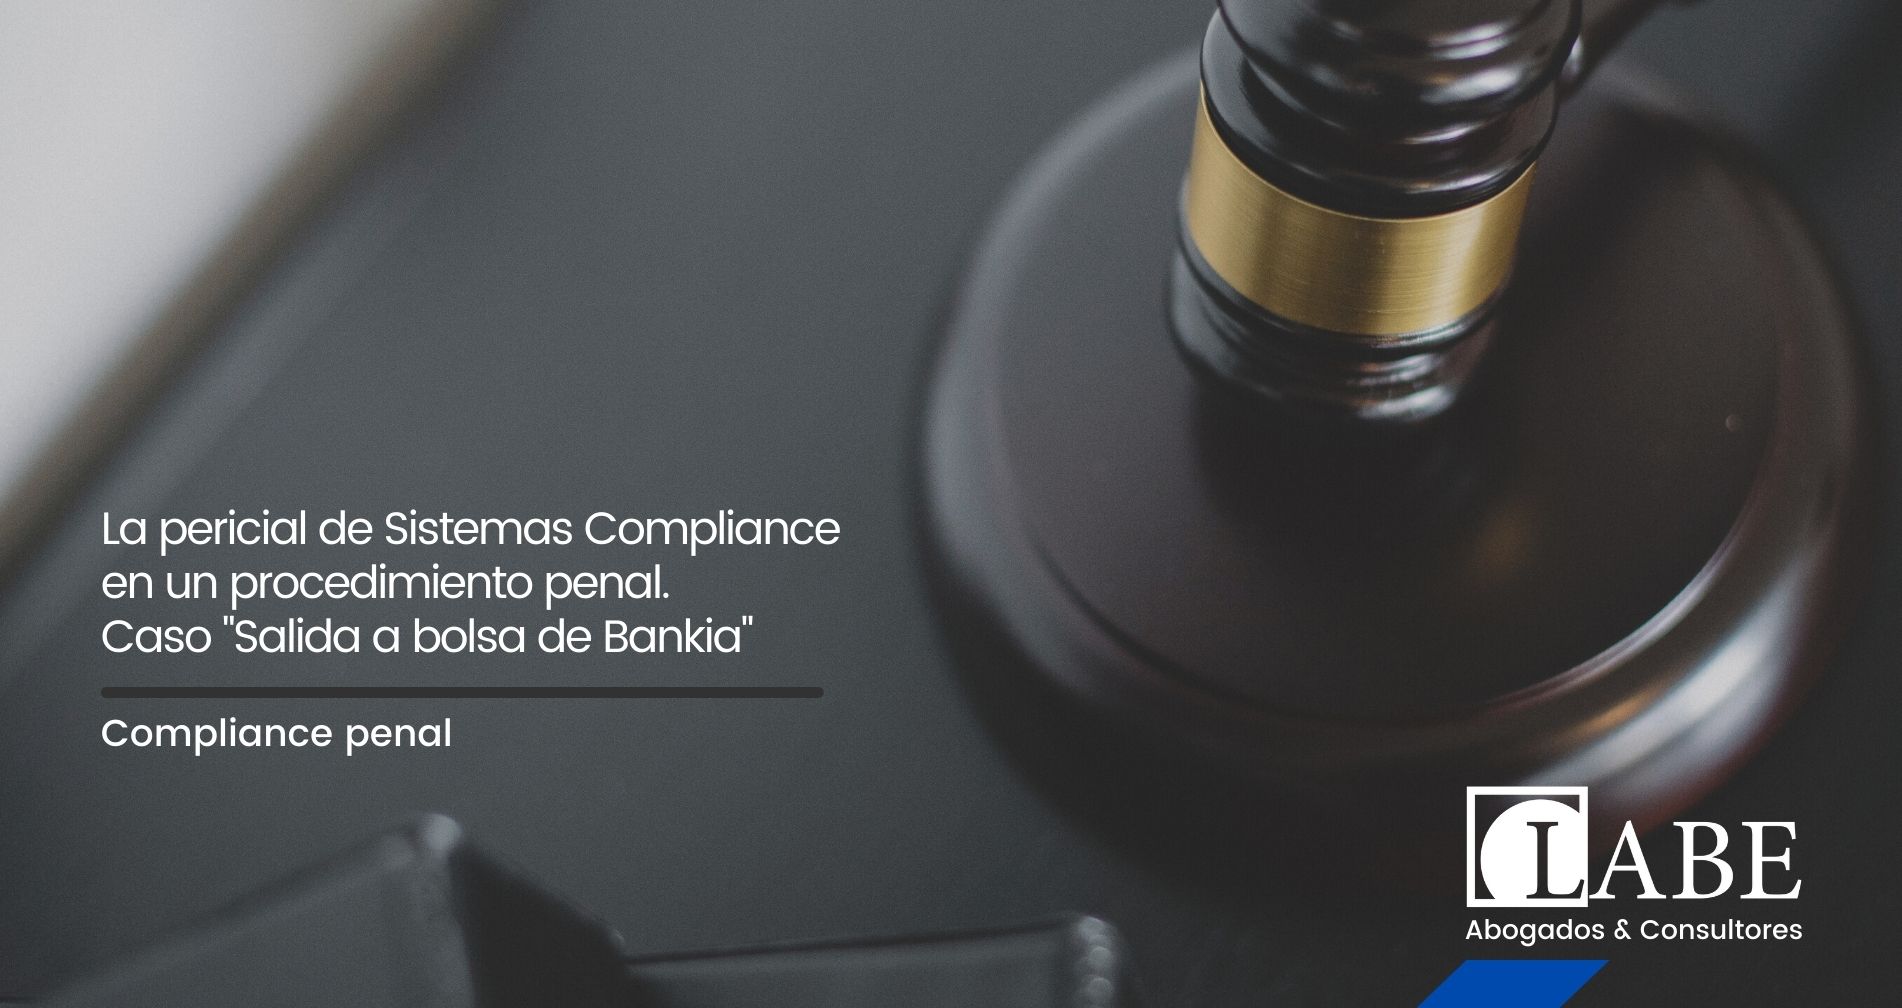 La pericial de Sistemas Compliance en un procedimiento penal. Caso “Salida a bolsa de Bankia”